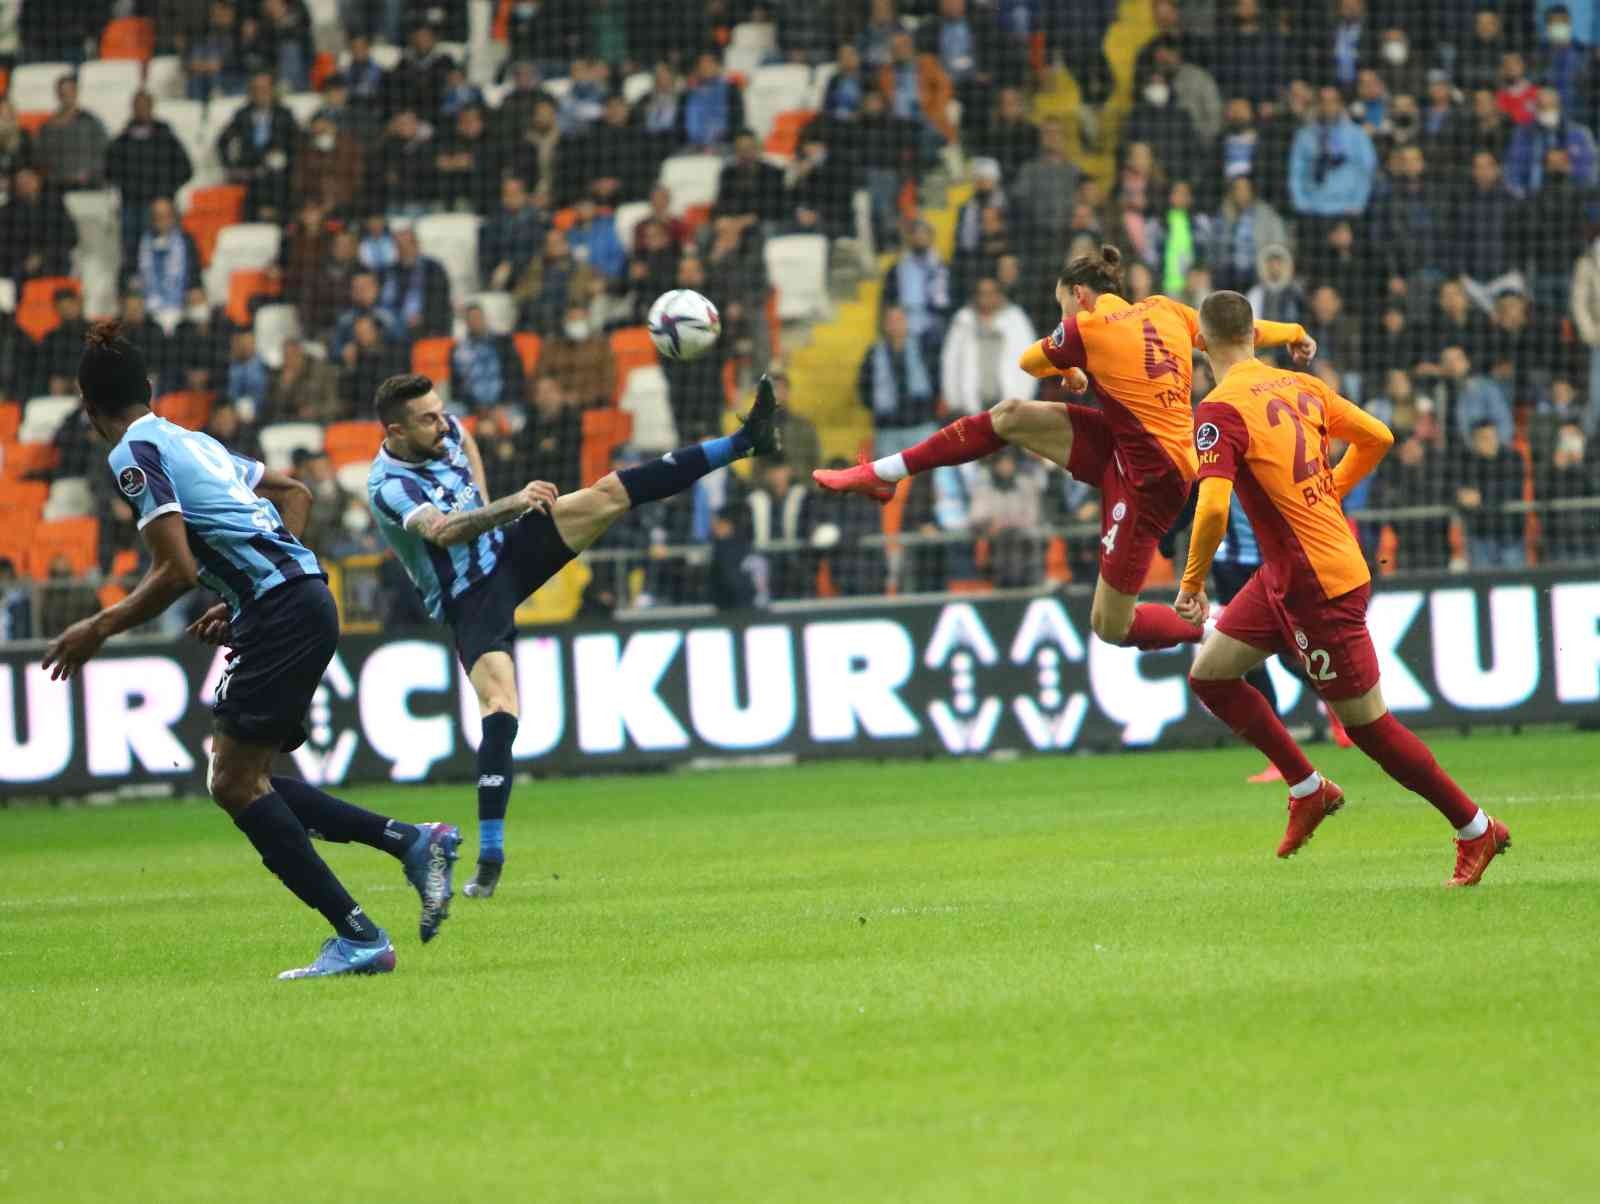 Spor Toto Süper Lig: Adana Demirspor: 0 - Galatasaray: 0  (Maç devam ediyor) #adana